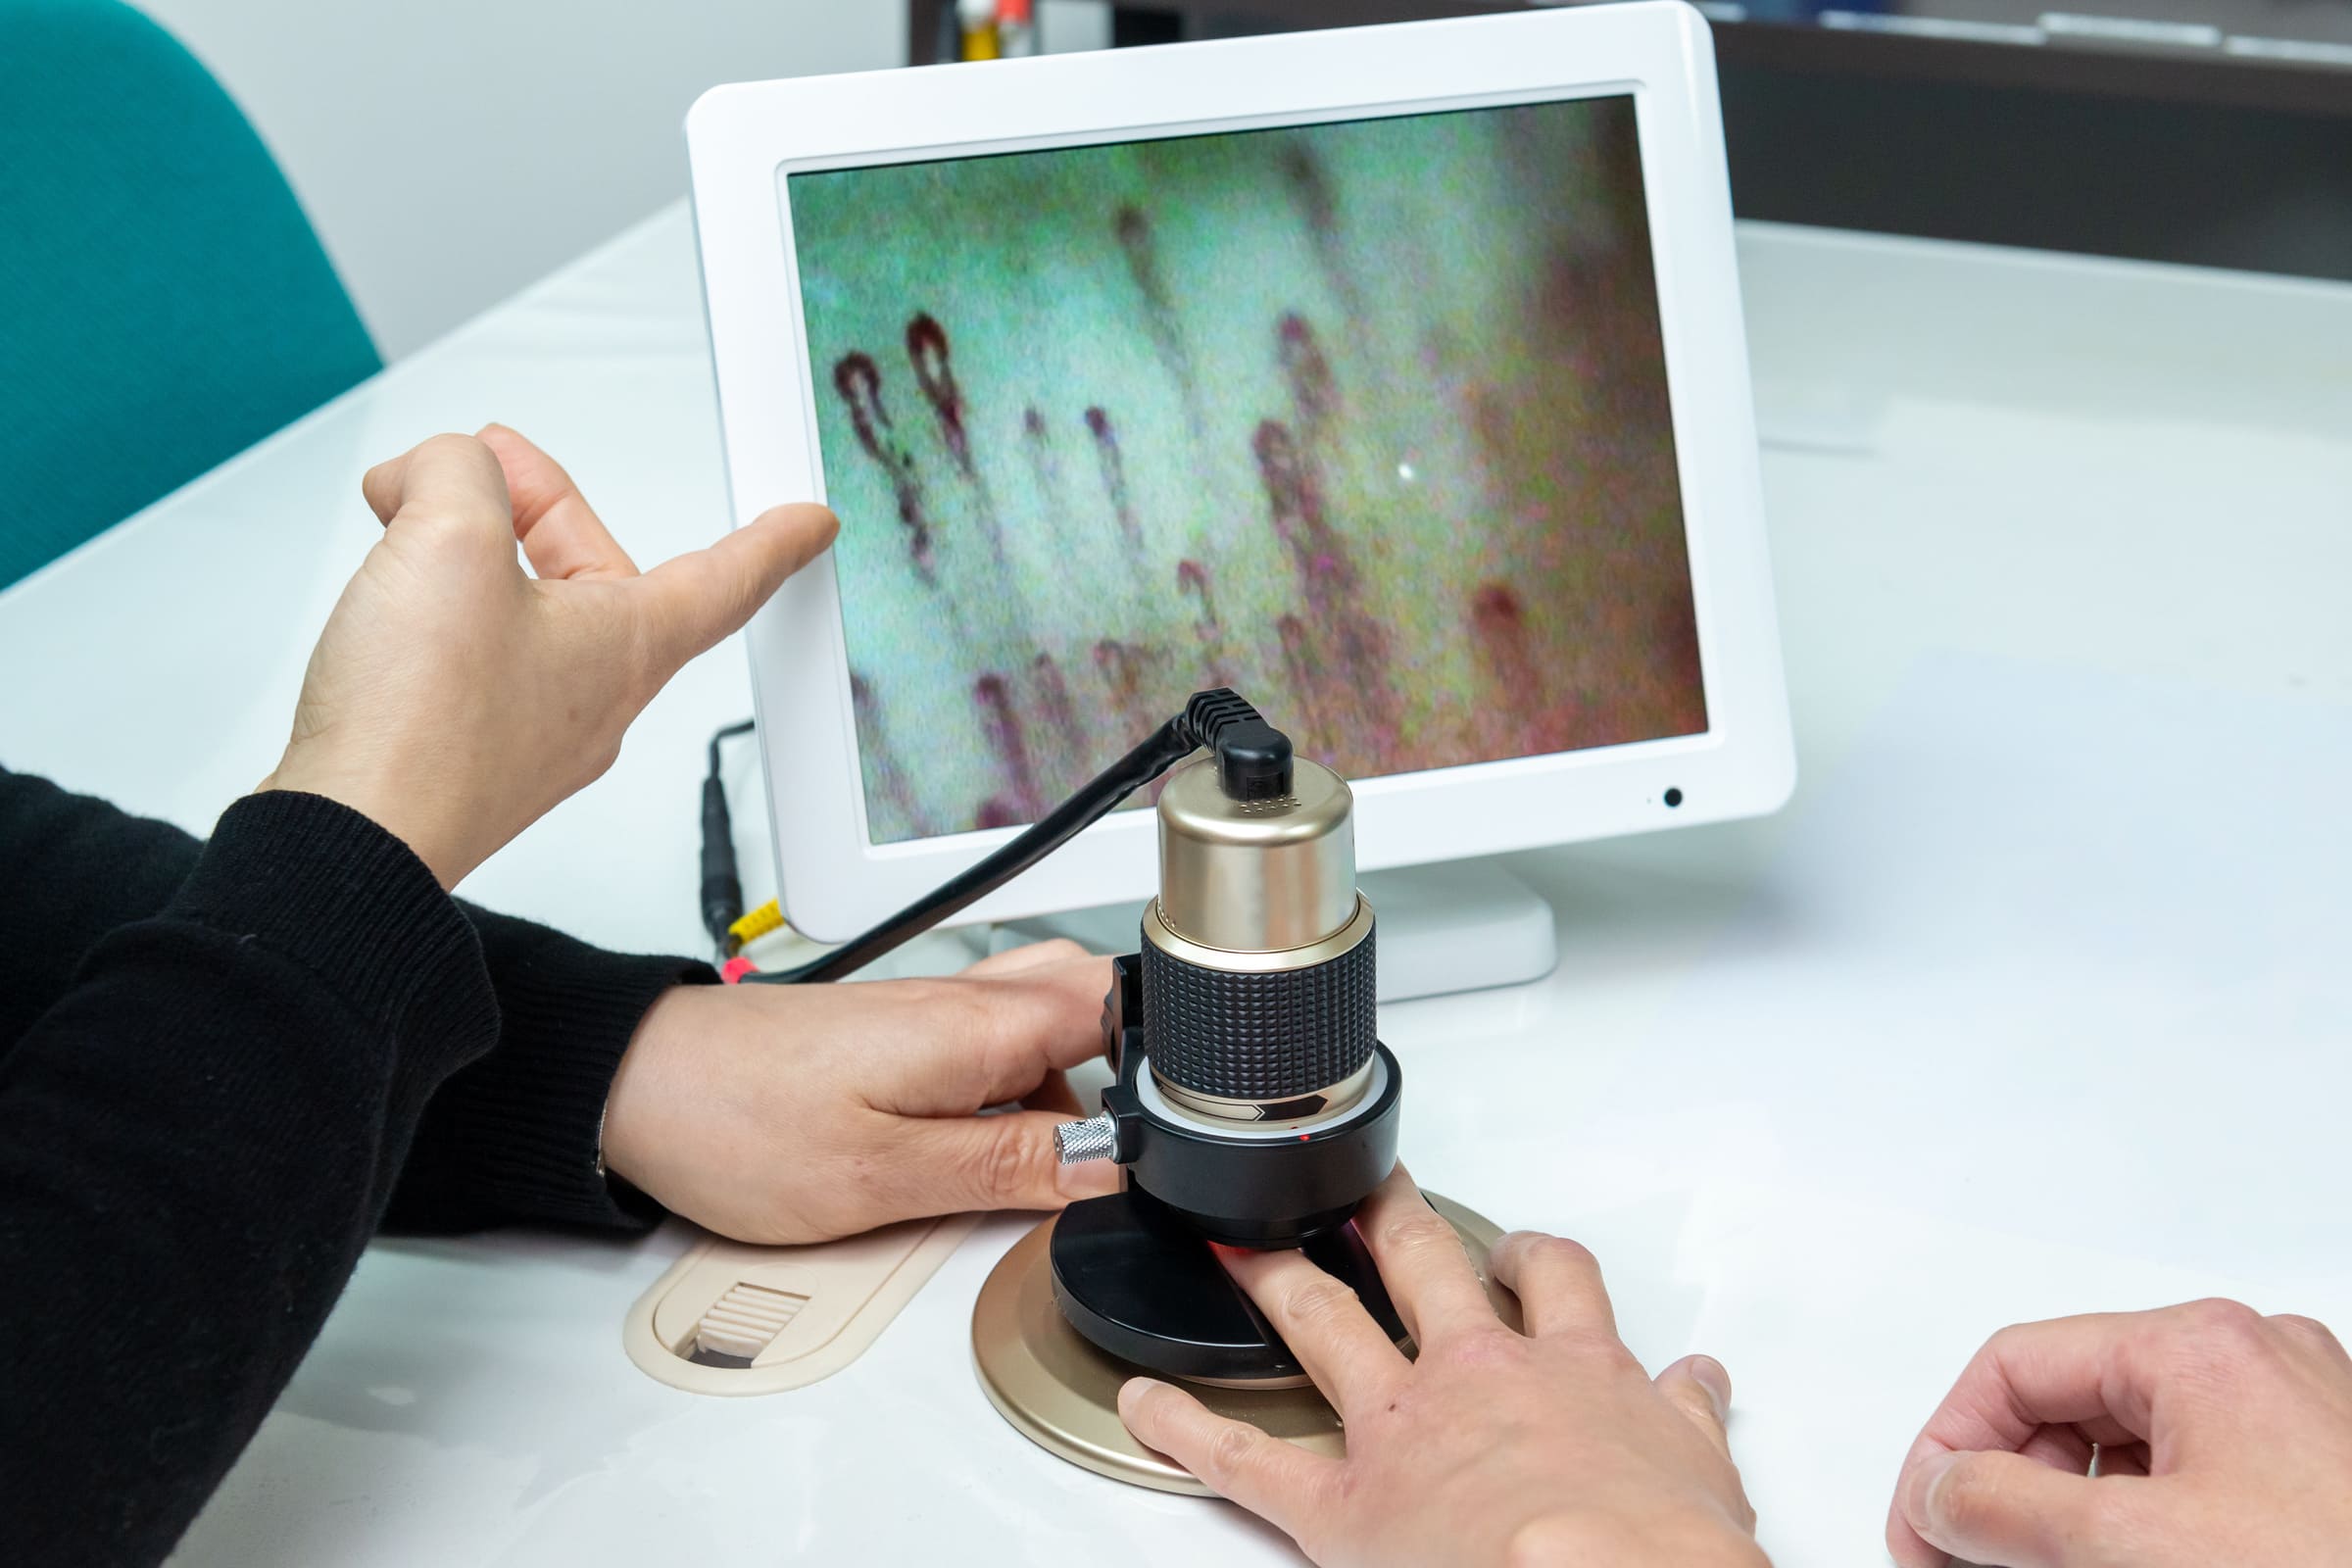 Procedimiento de capilaroscopia - El médico examina el lecho ungueal del paciente con un microscopio